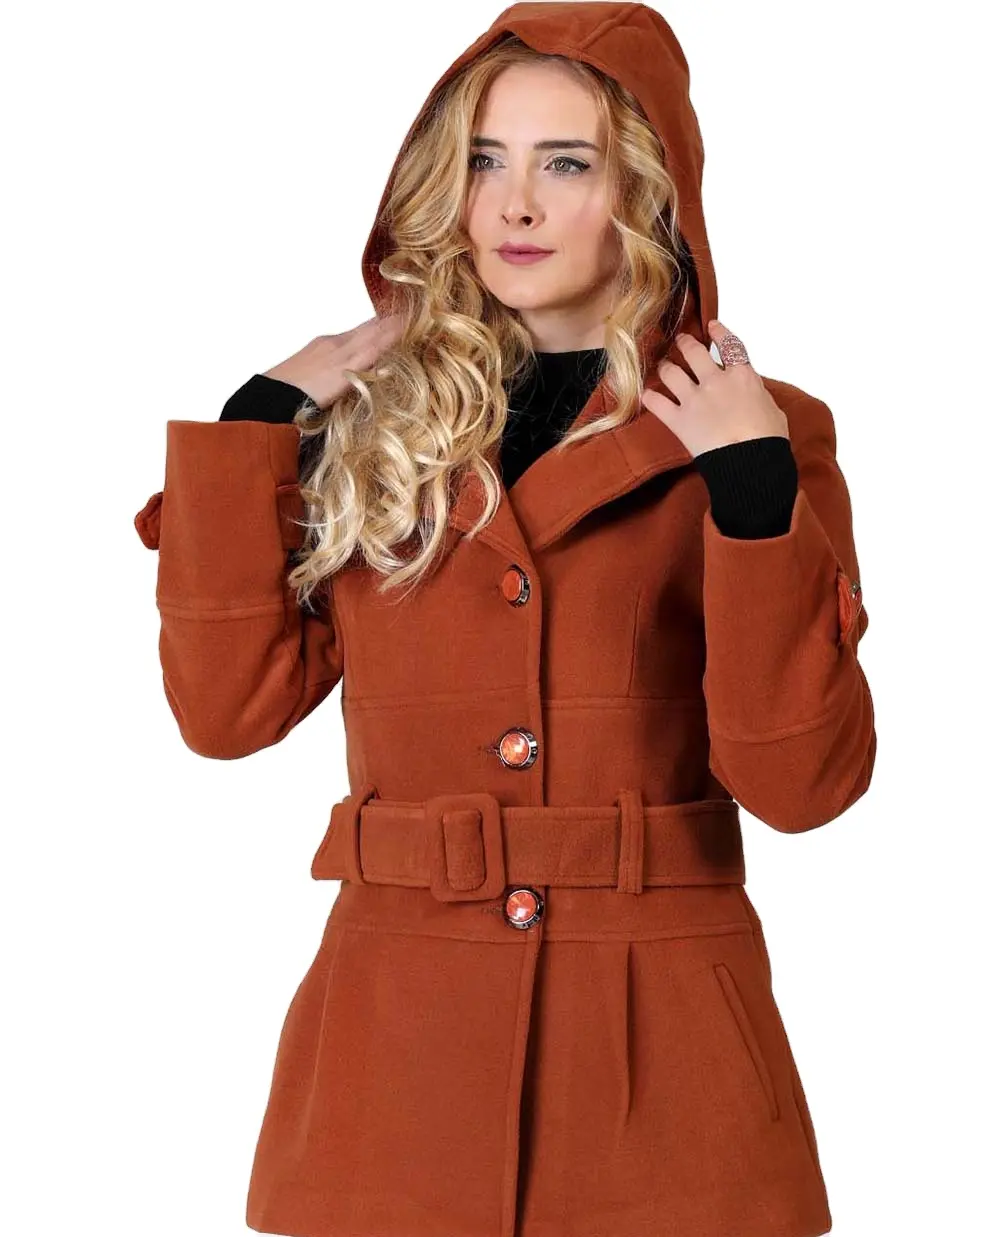 महिलाएं बाहर की ऊनी प्लस आकार की महिलाओं की ट्रेंच सर्दियों और शरद जैकेट फर कॉलर वू चमड़े के कोट का कोट